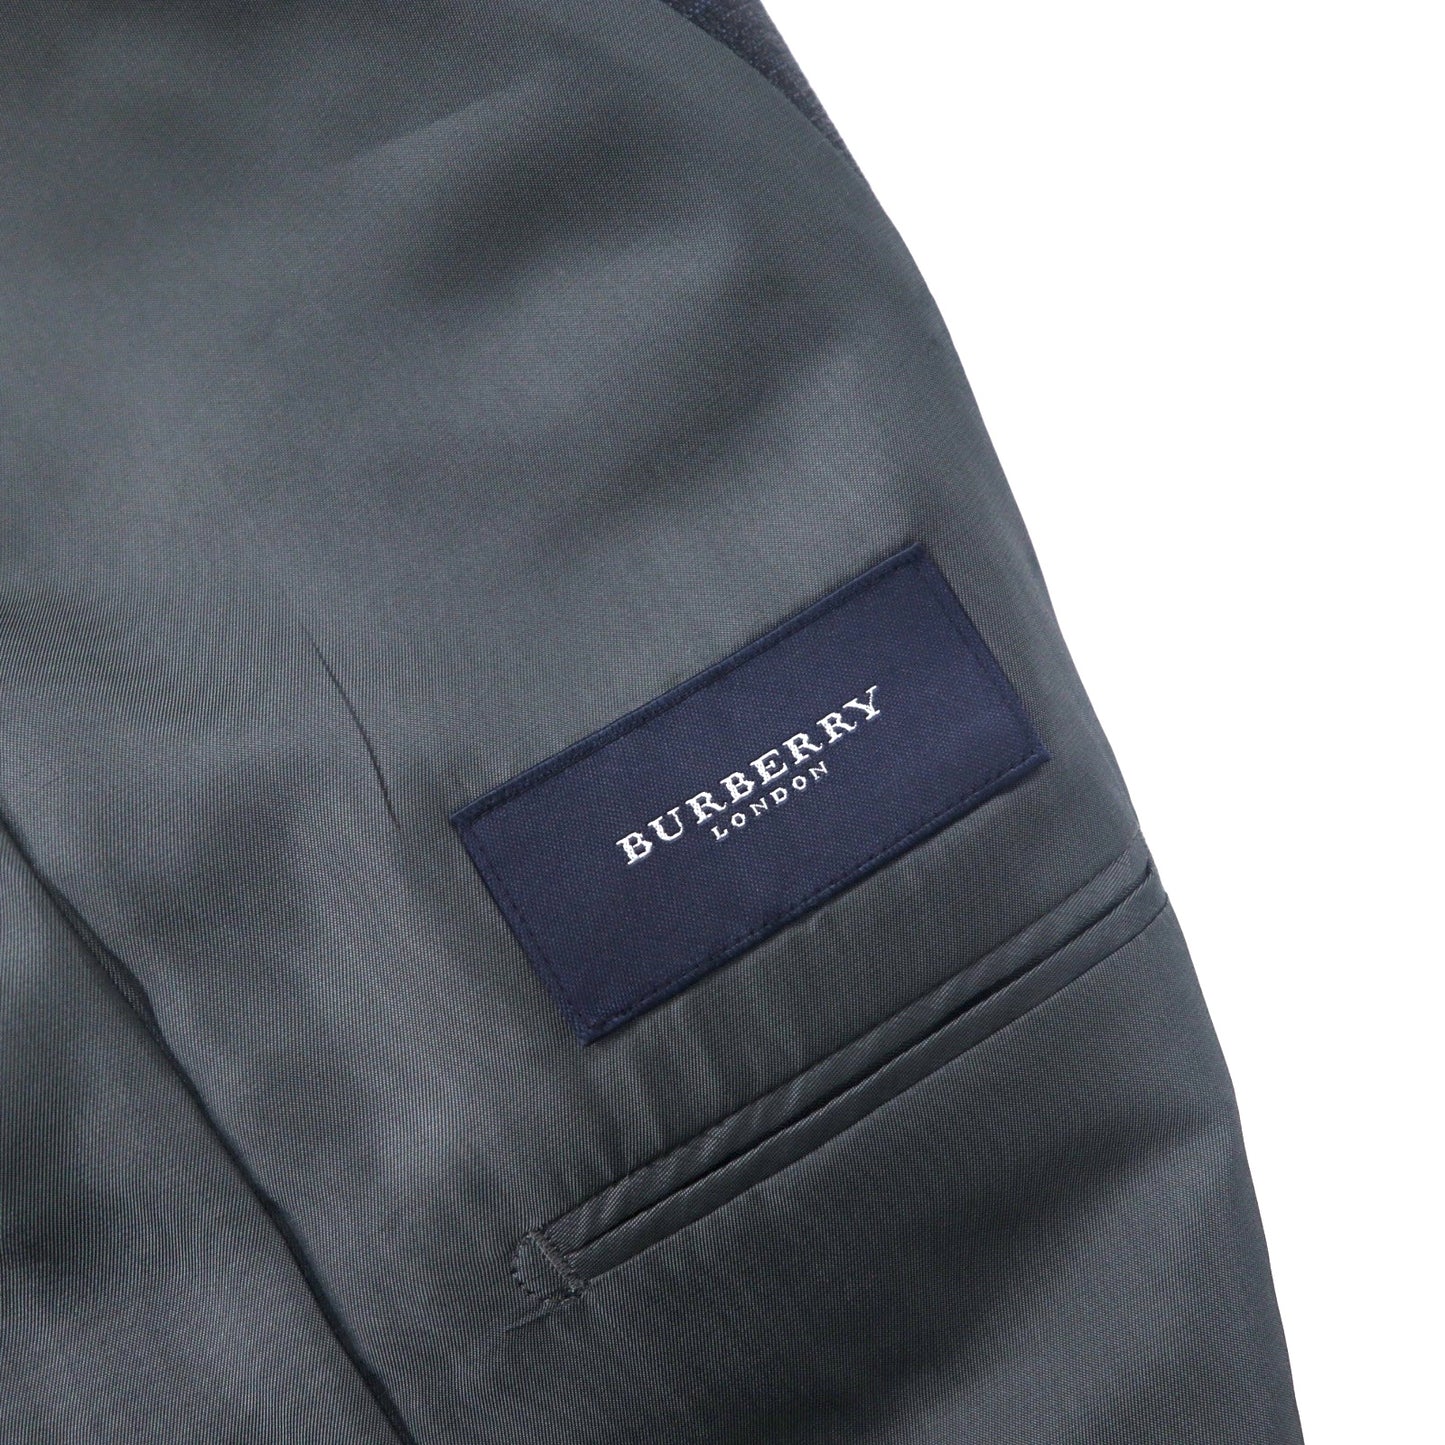 BURBERRY 2B スーツ セットアップ 98-88-175 AB6 グレー チェック ウール 羊毛 日本製